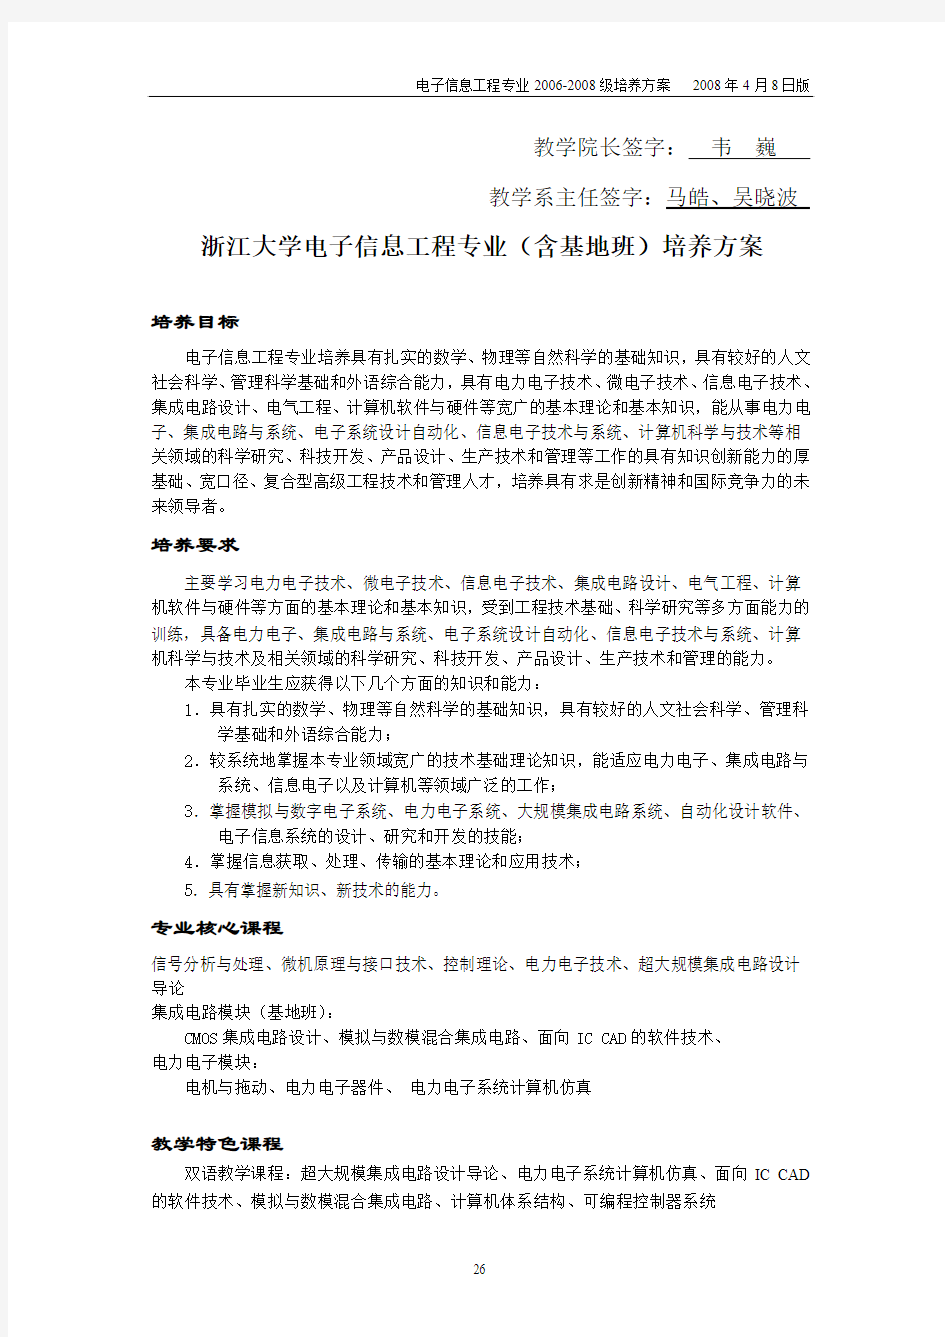 浙江大学电子信息工程专业(含基地班)培养方案